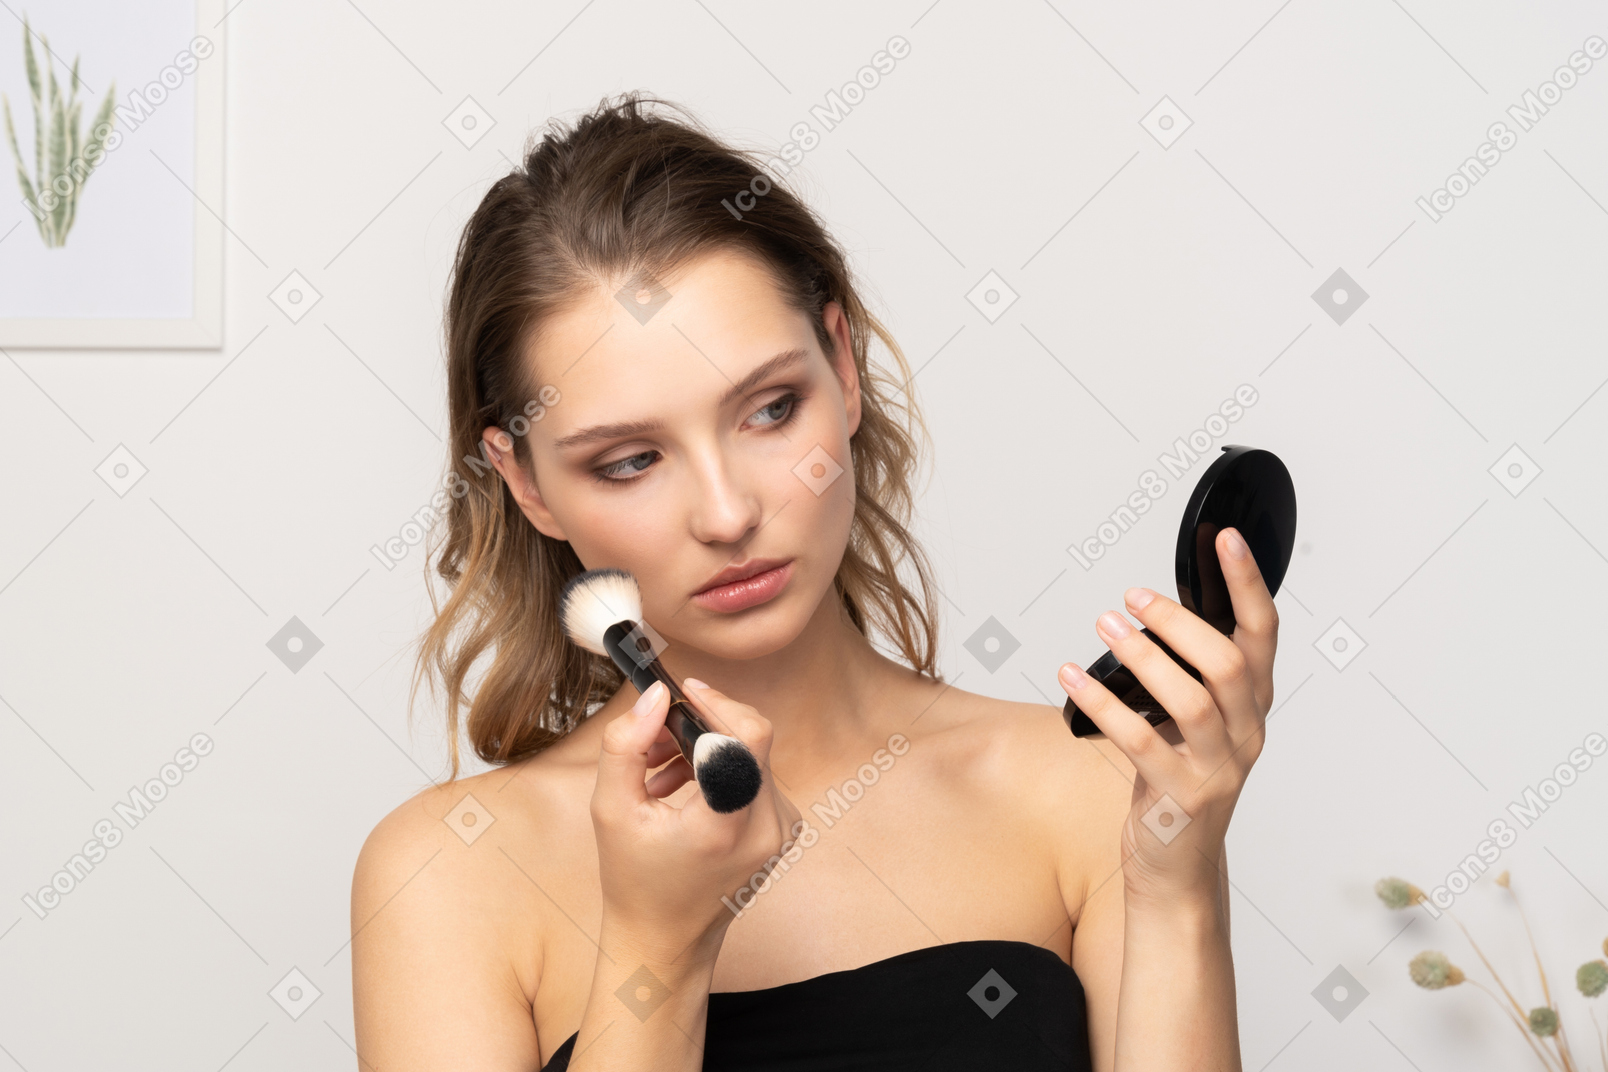 Vista frontal de una mujer joven que aplica polvos faciales mientras sostiene un espejo